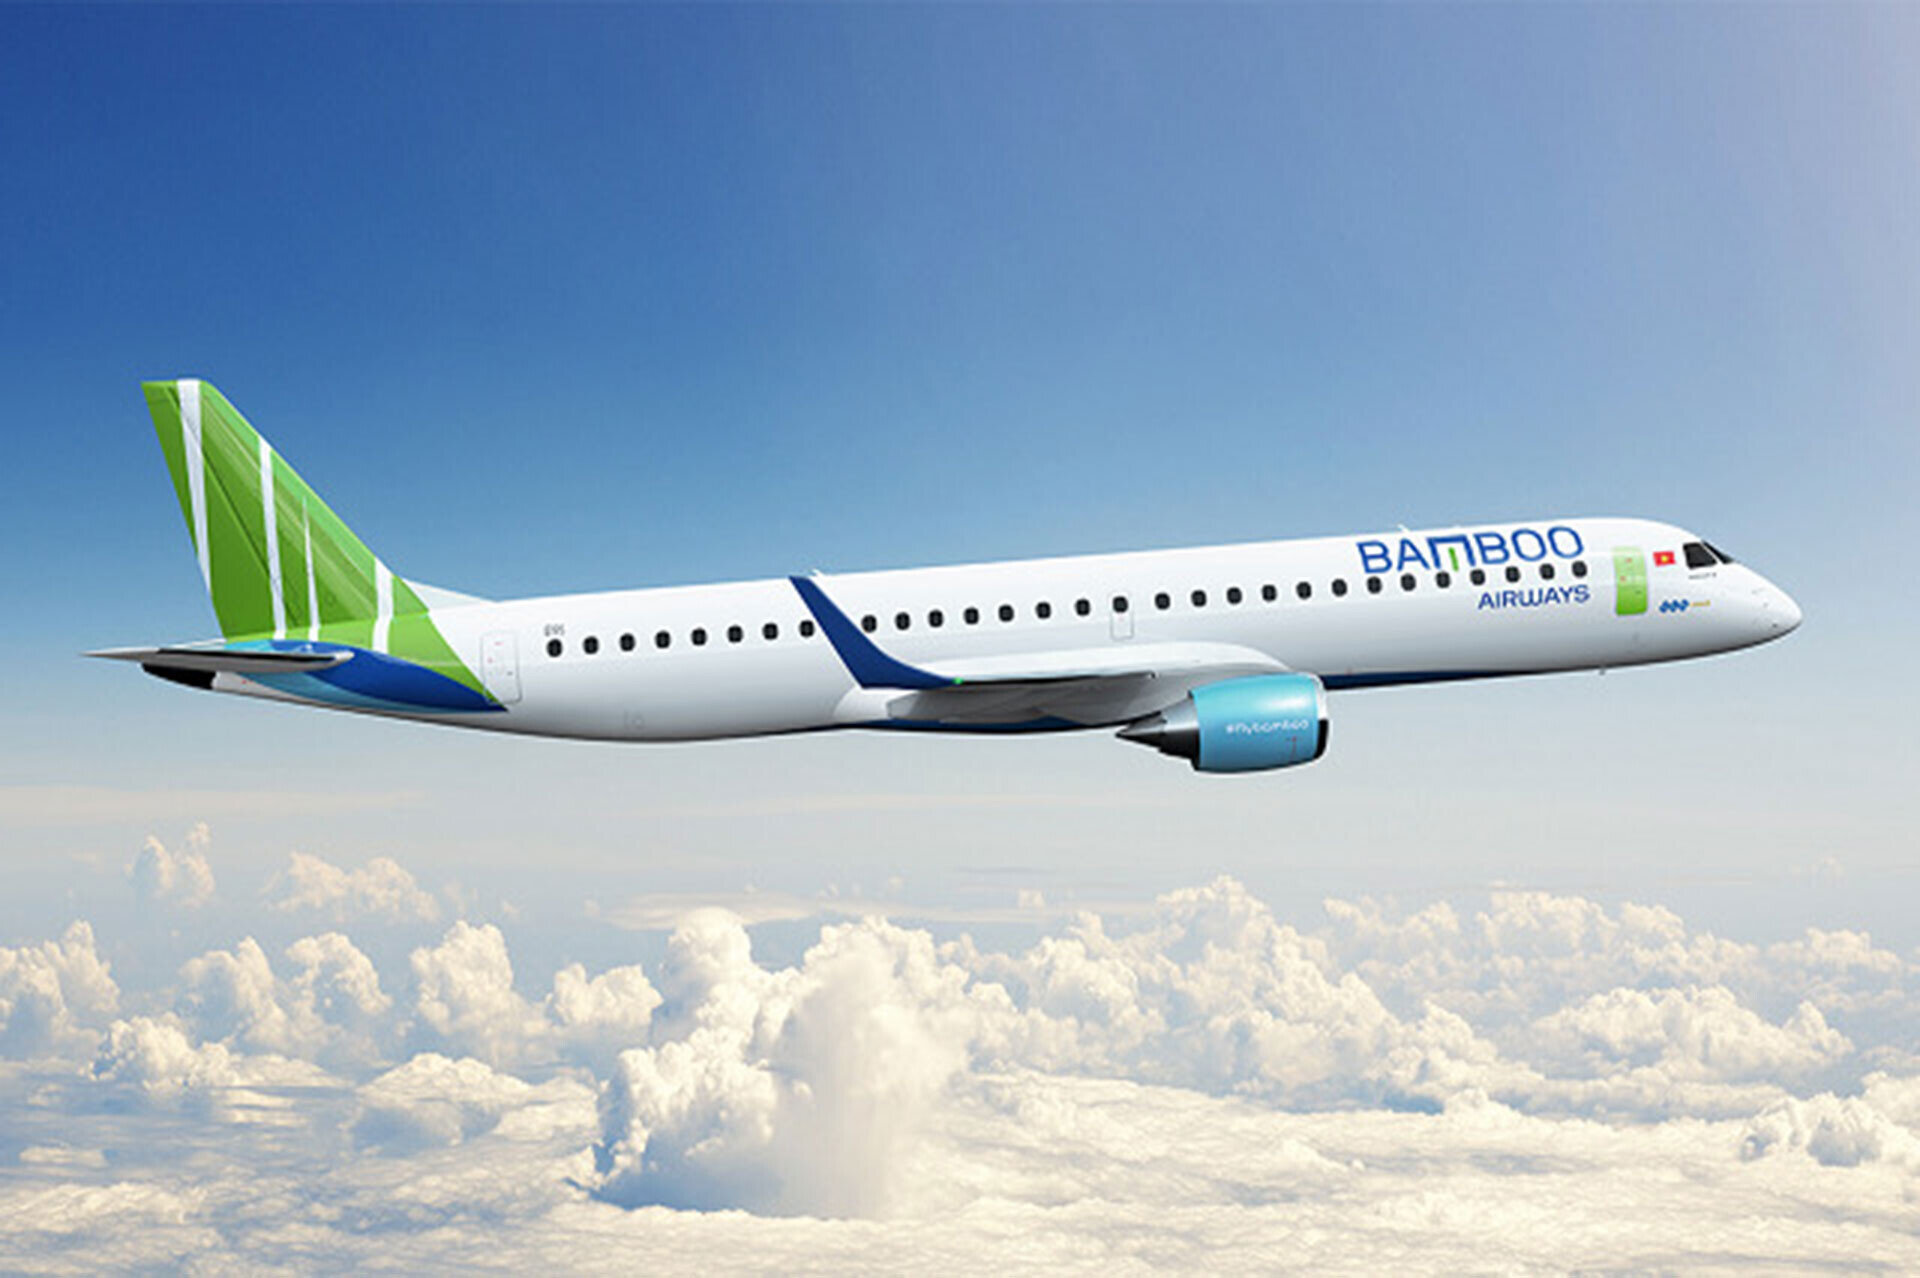 Bamboo Airways cho biết sẽ tiếp tục phát triển mạng bay, tối ưu hóa mọi nguồn lực để tiếp tục phụng sự khách hàng.